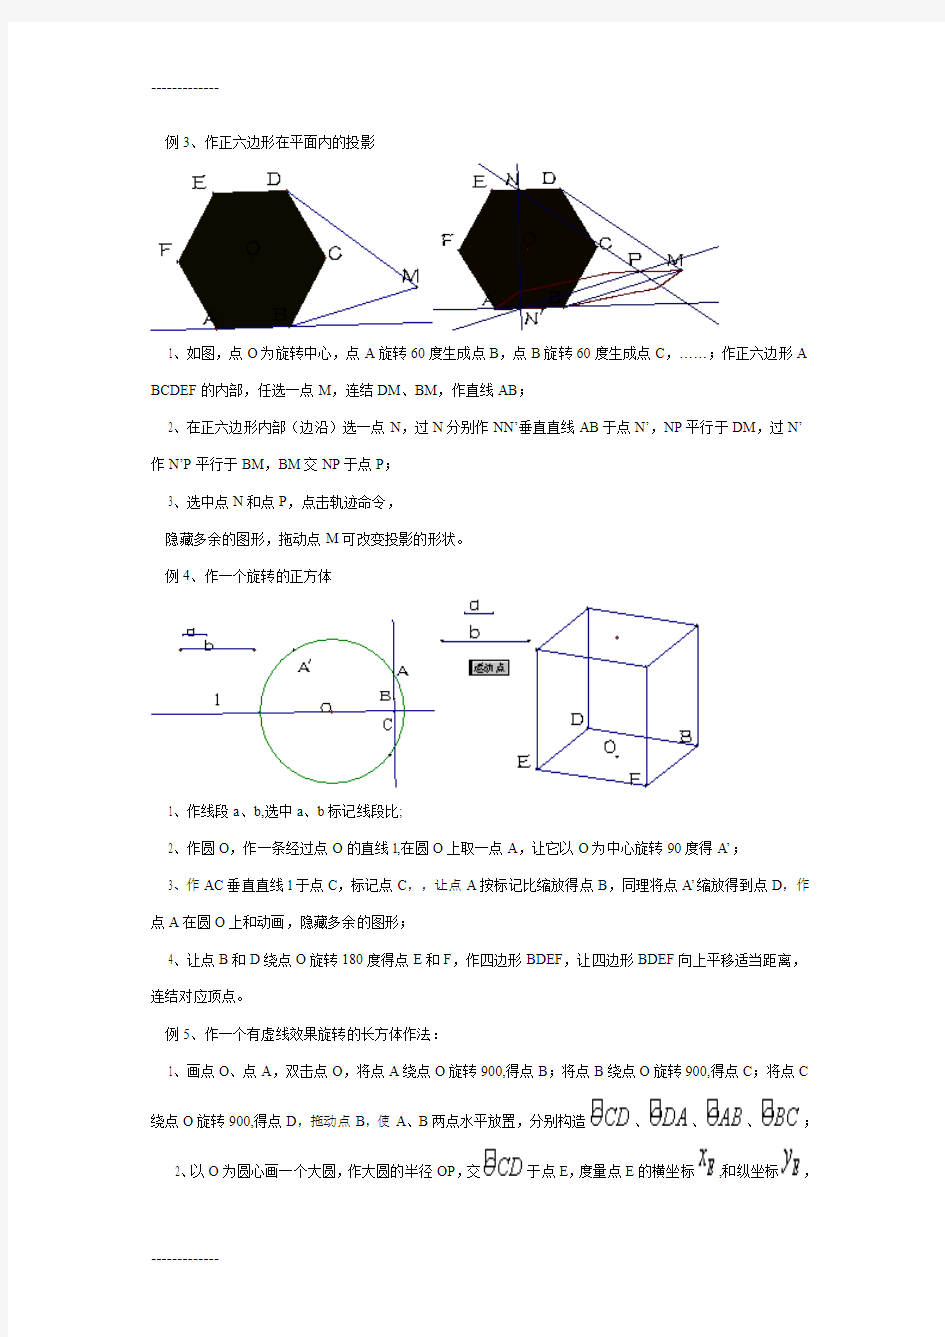 (整理)几何画板实例教程